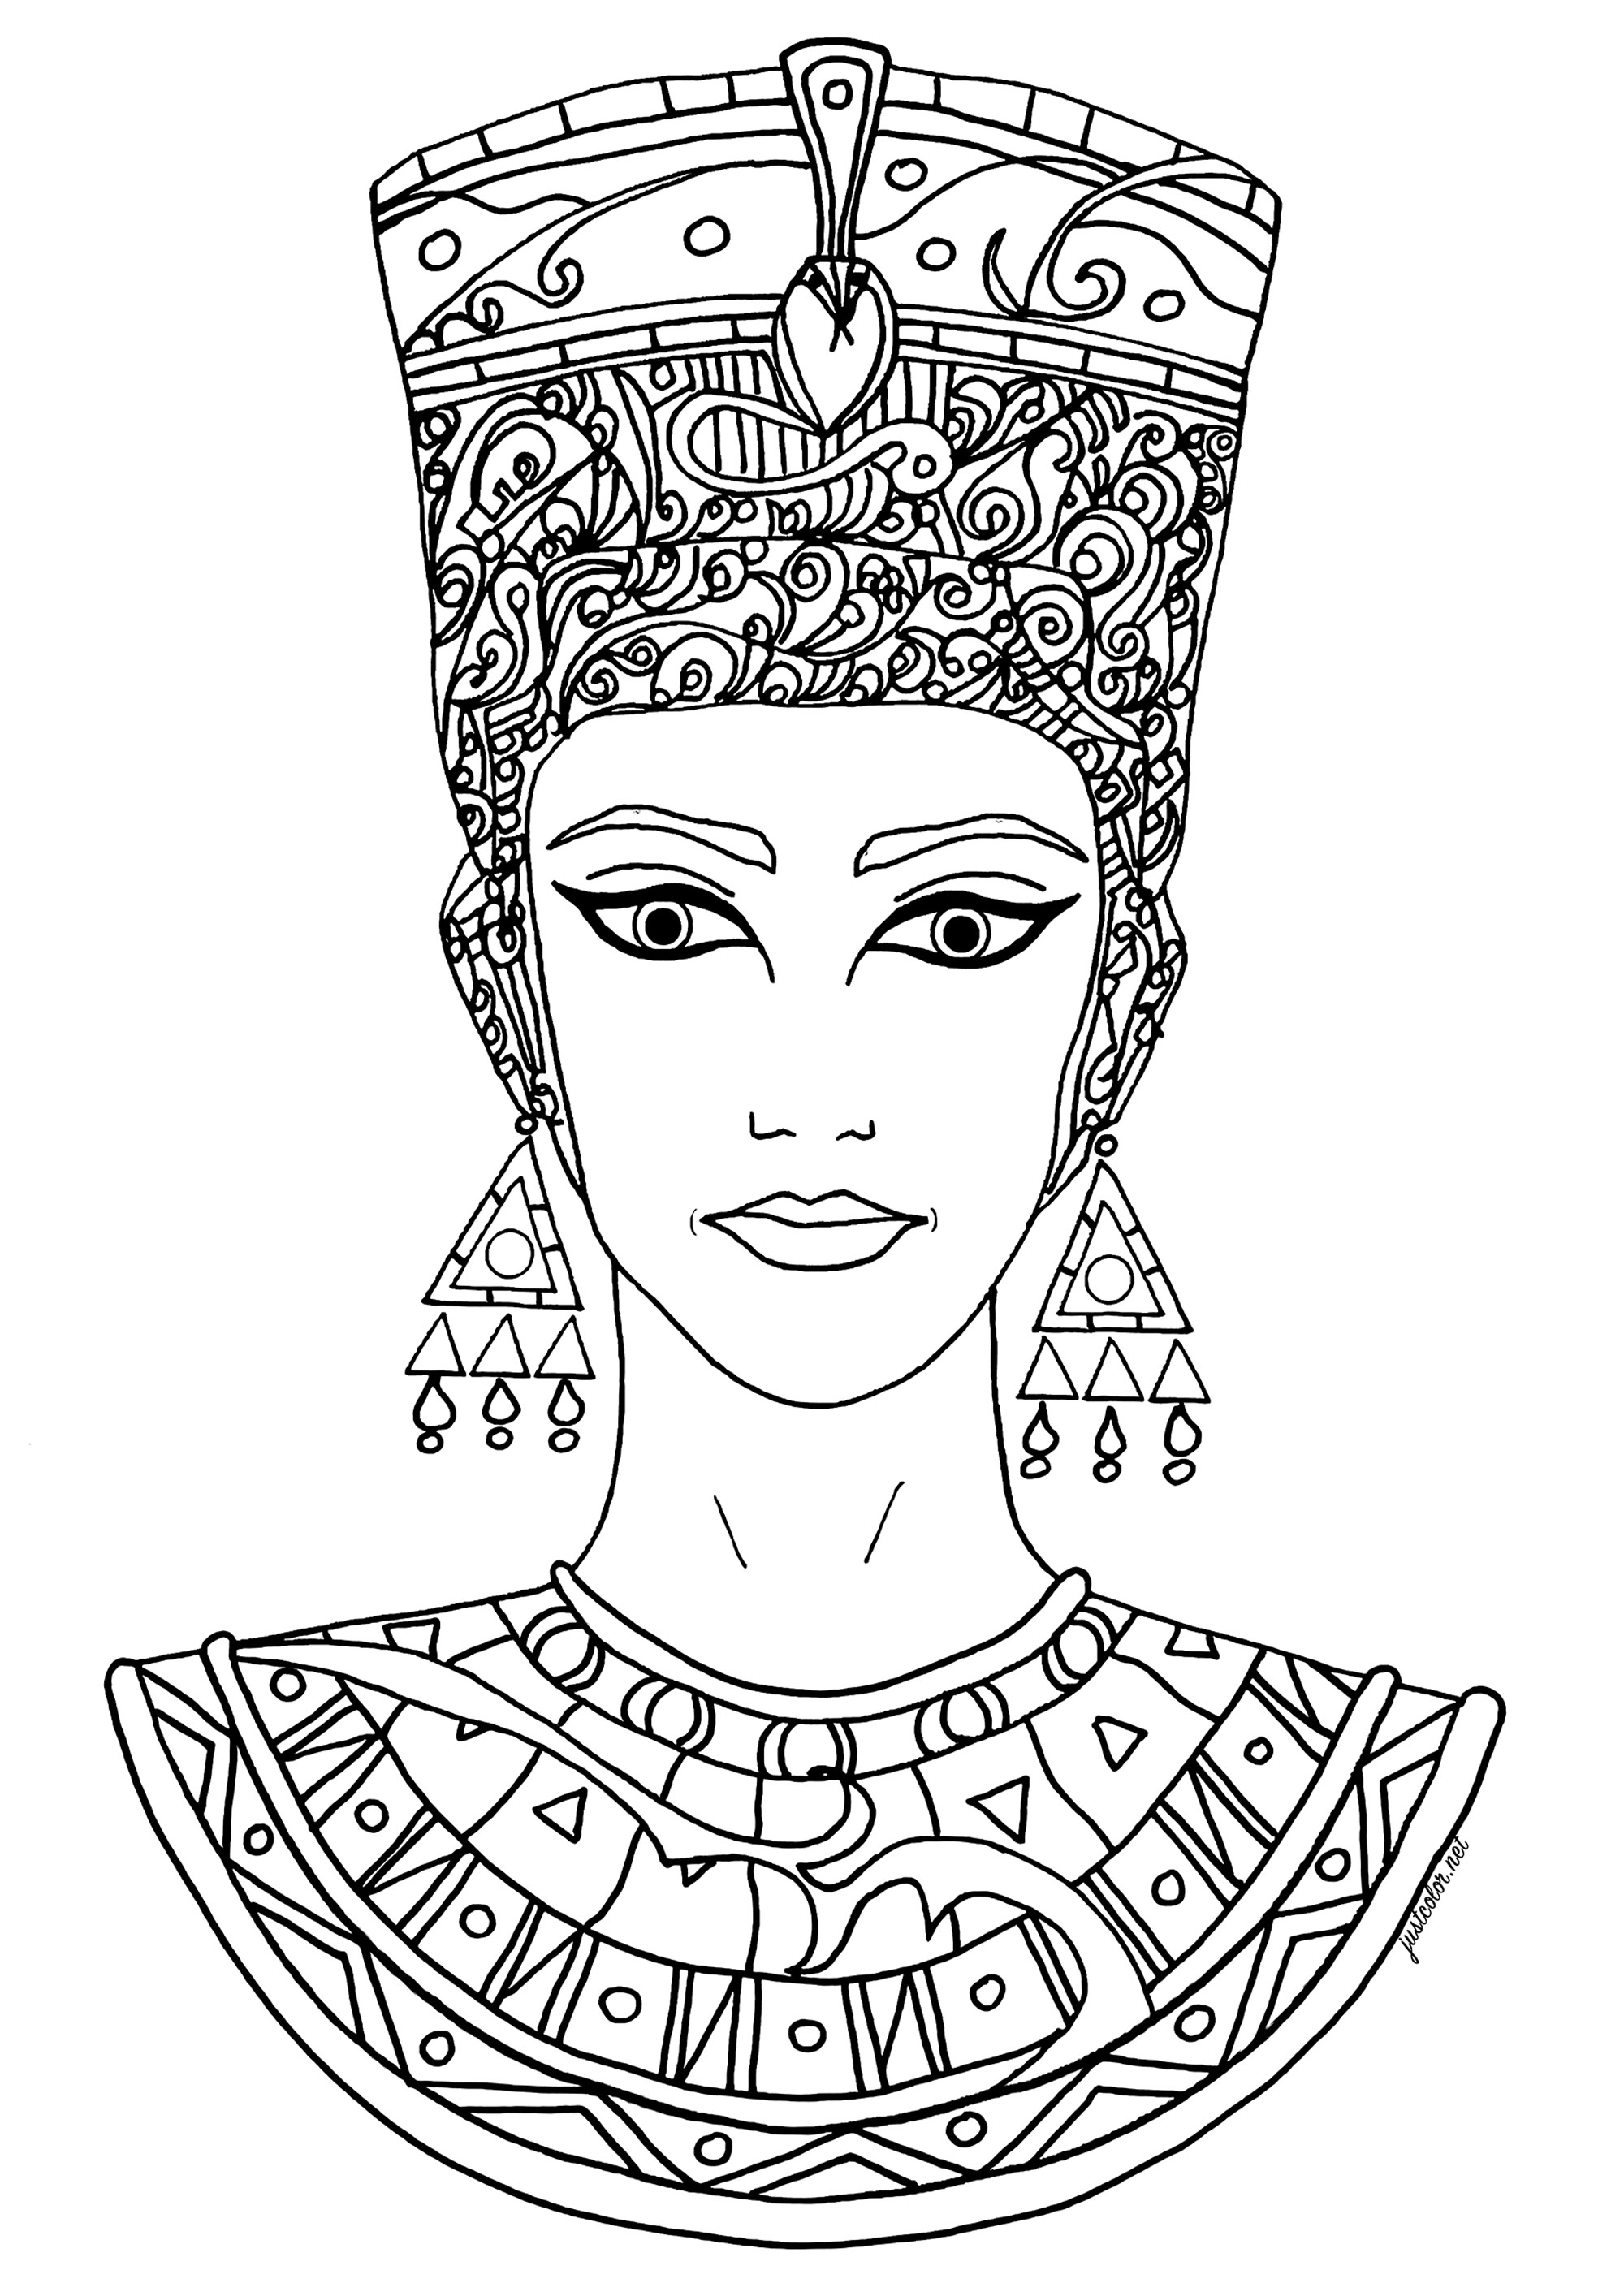 Desenho encantador livremente inspirado em Nefertiti. Nefertiti foi uma antiga rainha egípcia, esposa do faraó Akhenaton, que reinou por volta de 1353-1336 a.C. É mais conhecida pelo seu papel na revolução religiosa de Akhenaton, que viu o culto de Aten, o deus do sol, tornar-se a religião dominante do Egipto, e pelo seu famoso busto, que é considerado uma das obras mais importantes da arte egípcia.